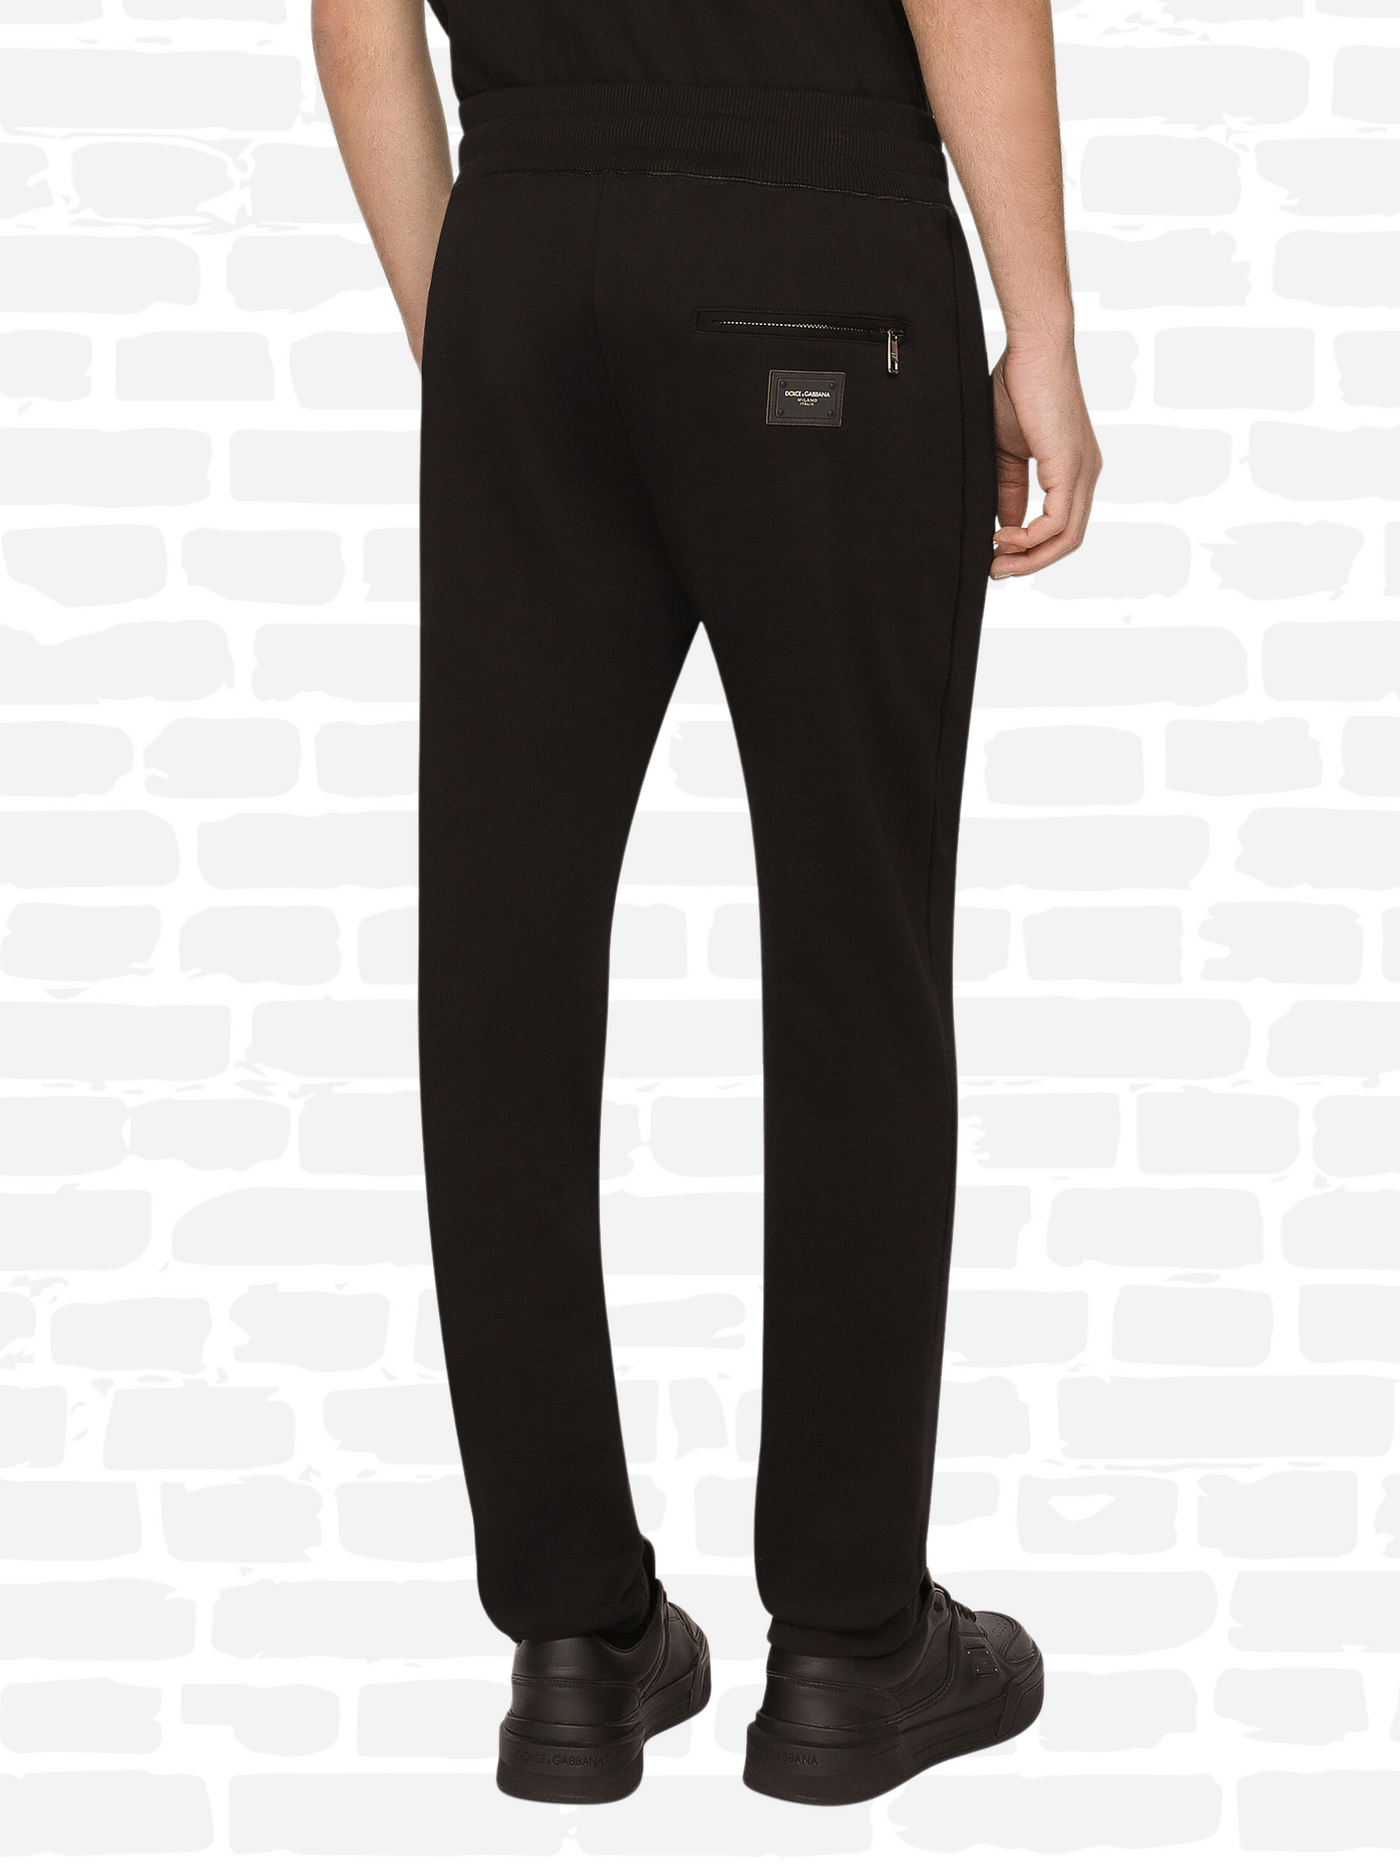 דולצ'ה גאבנה מכנסיים צבע שחור Jersey jogging pants